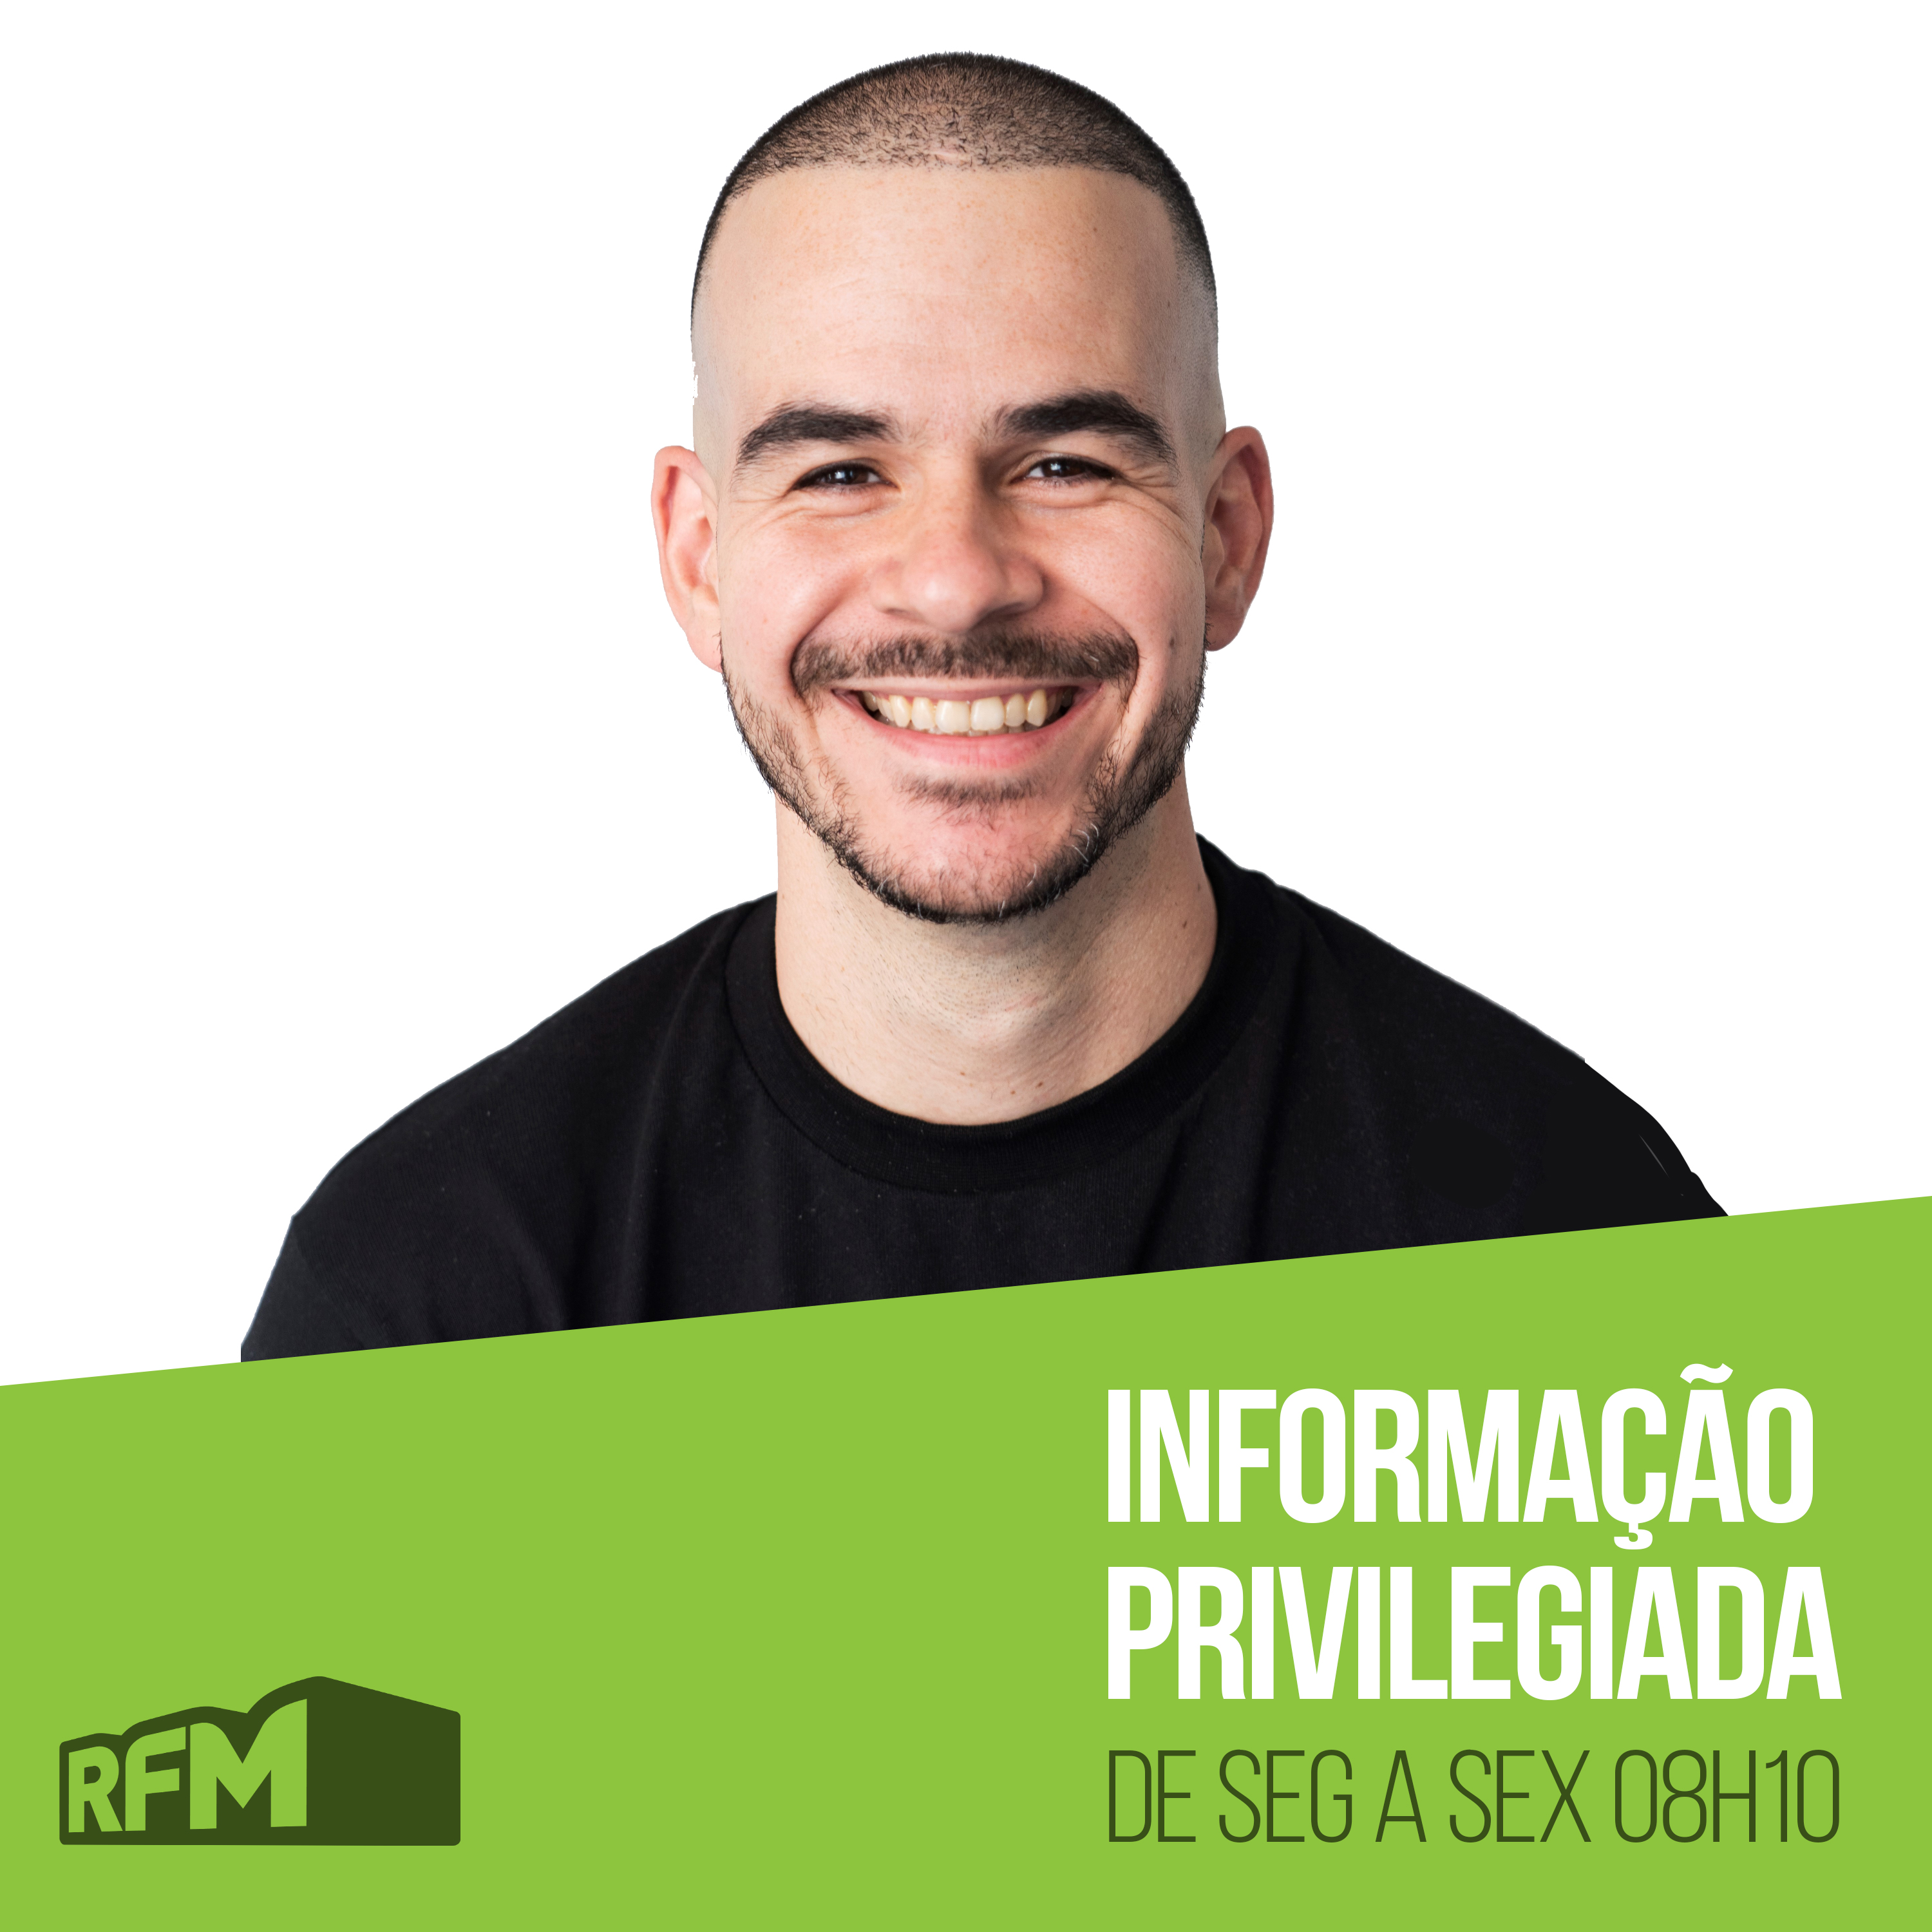 RFM - Informação Privilegiada: ESCÂNDALO FAMILIAR NO CAFÉ DA MANHÃ